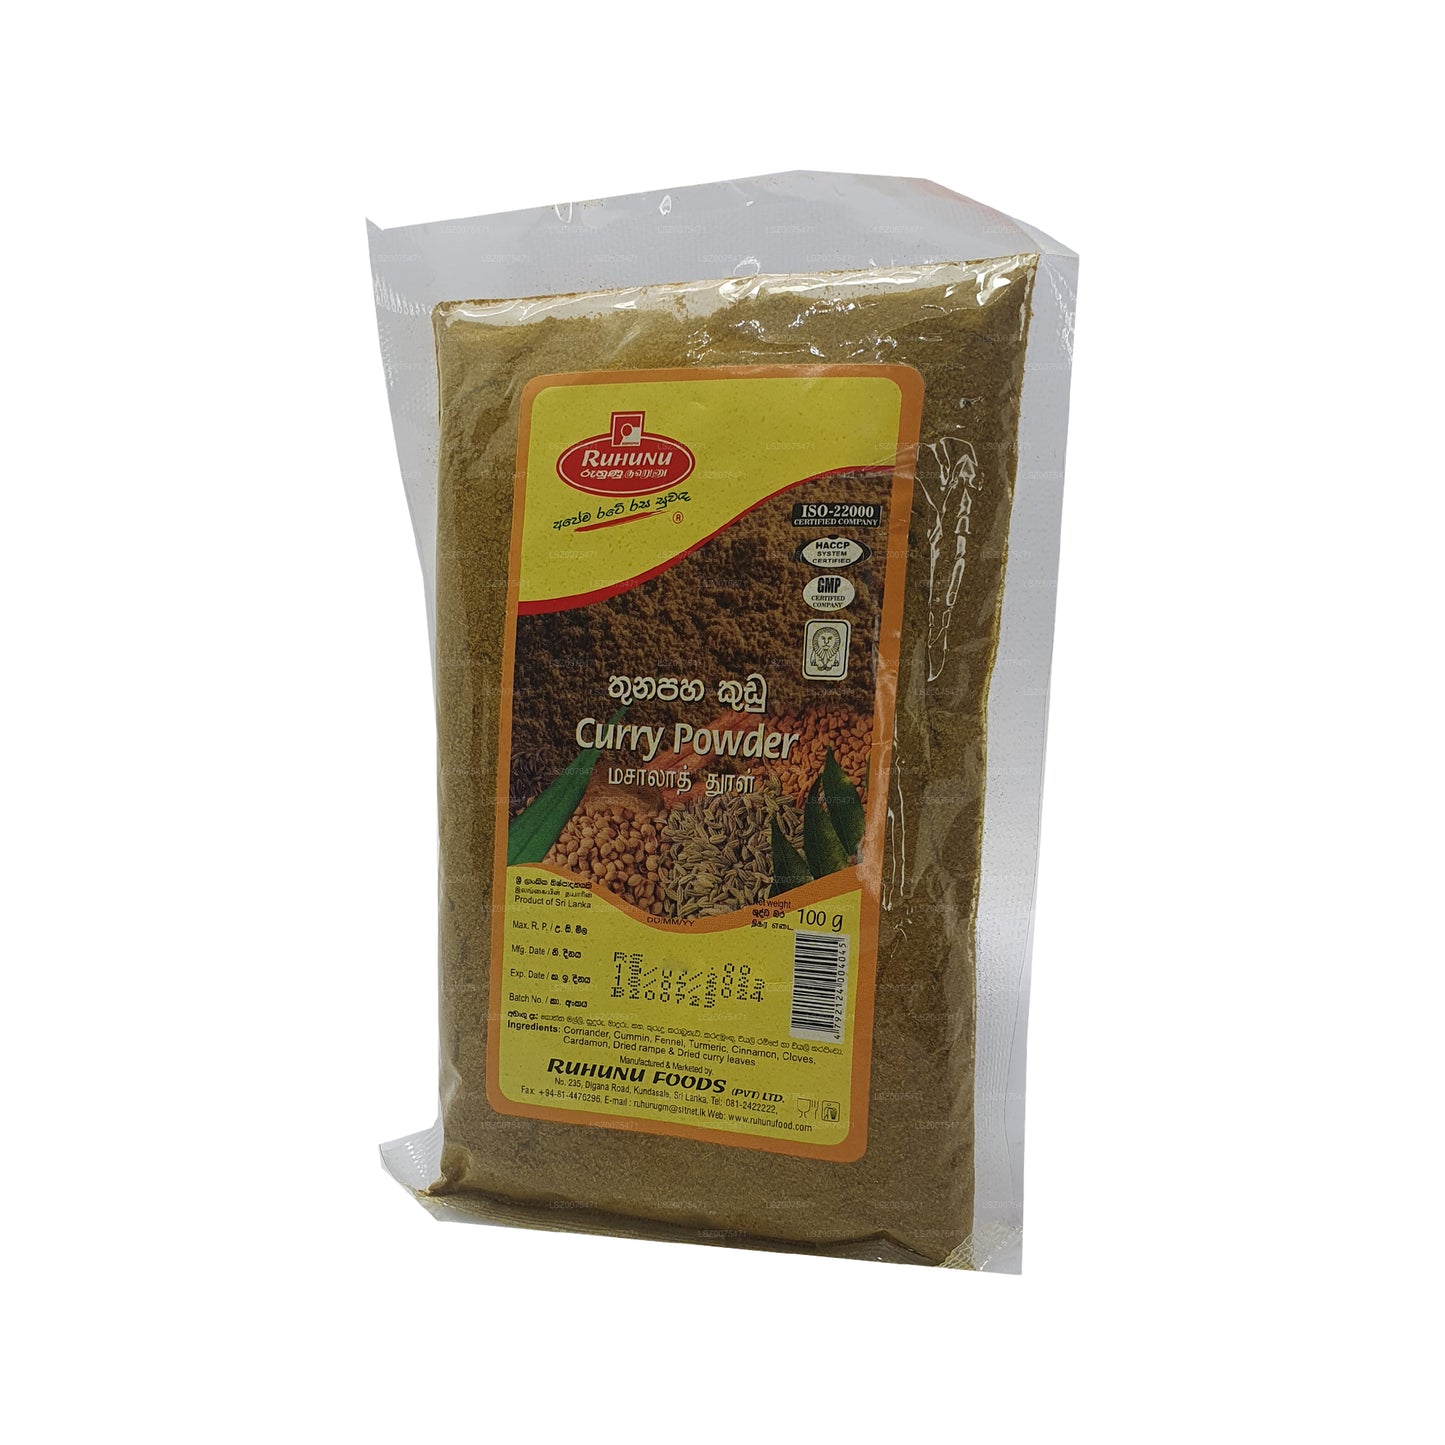 Ruhunu Curry Powder (100g)